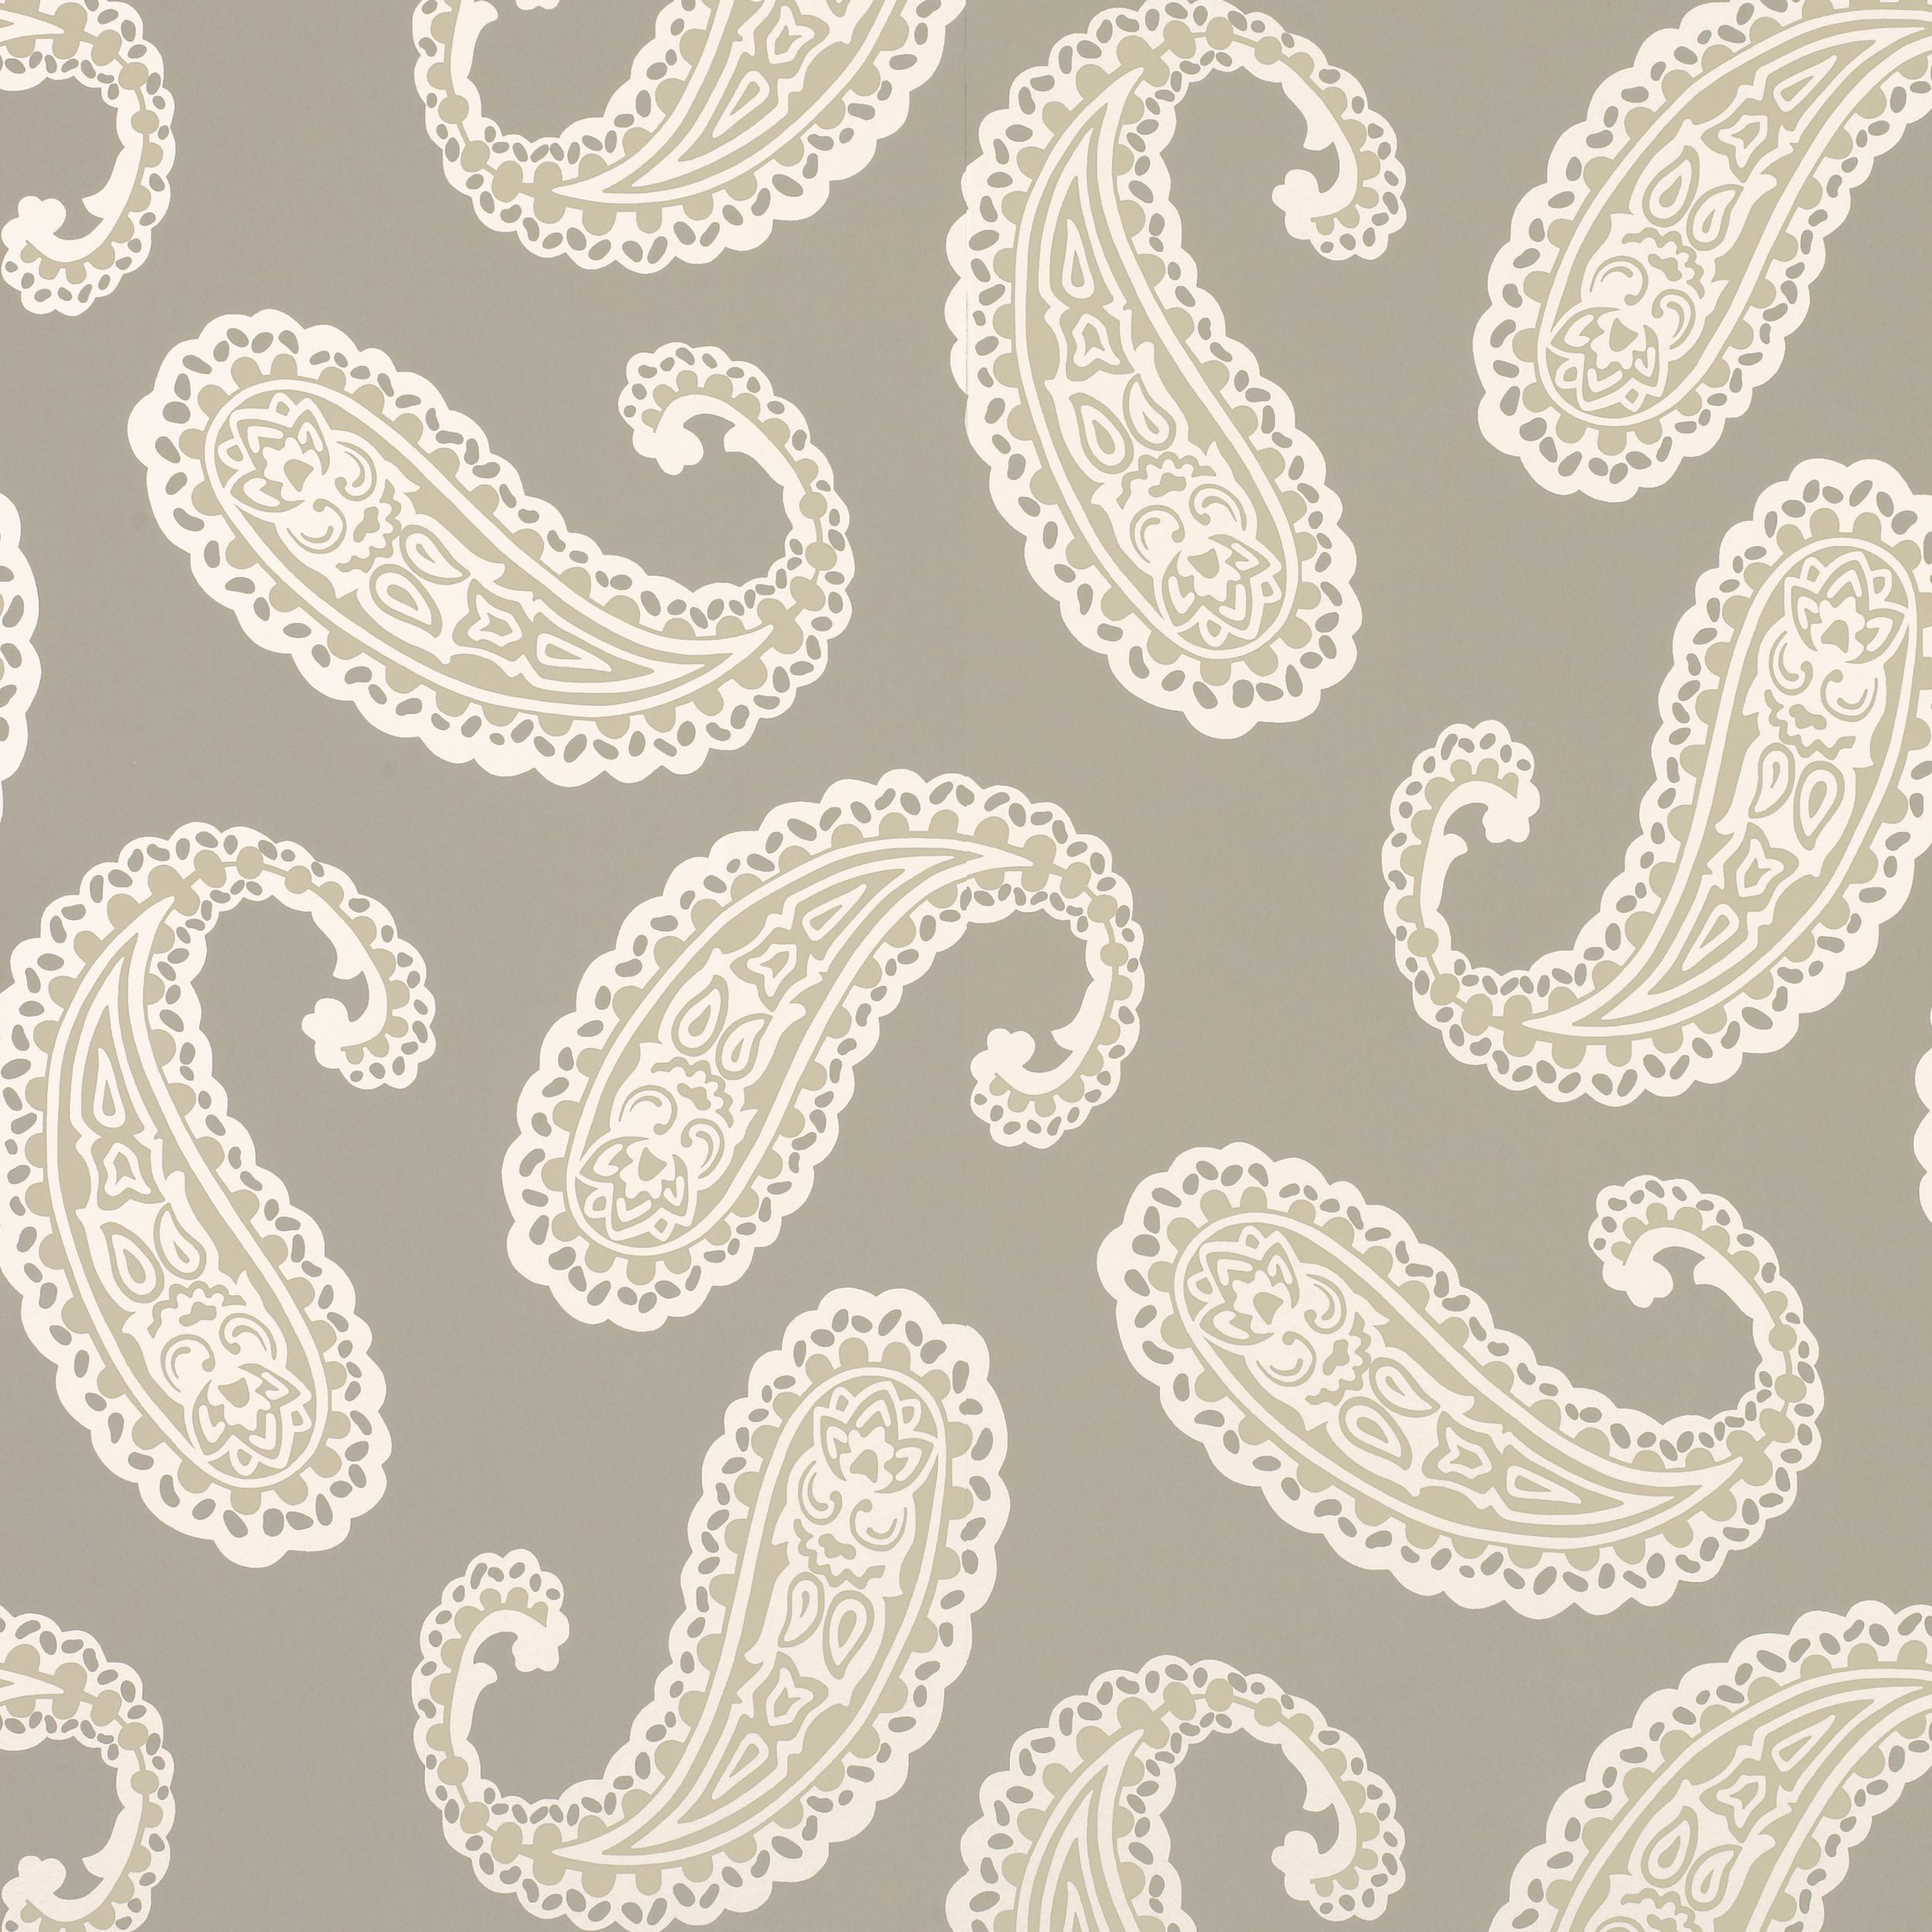 laura ashley paisley wallpaper,pattern,paisley,motif,visual arts,design